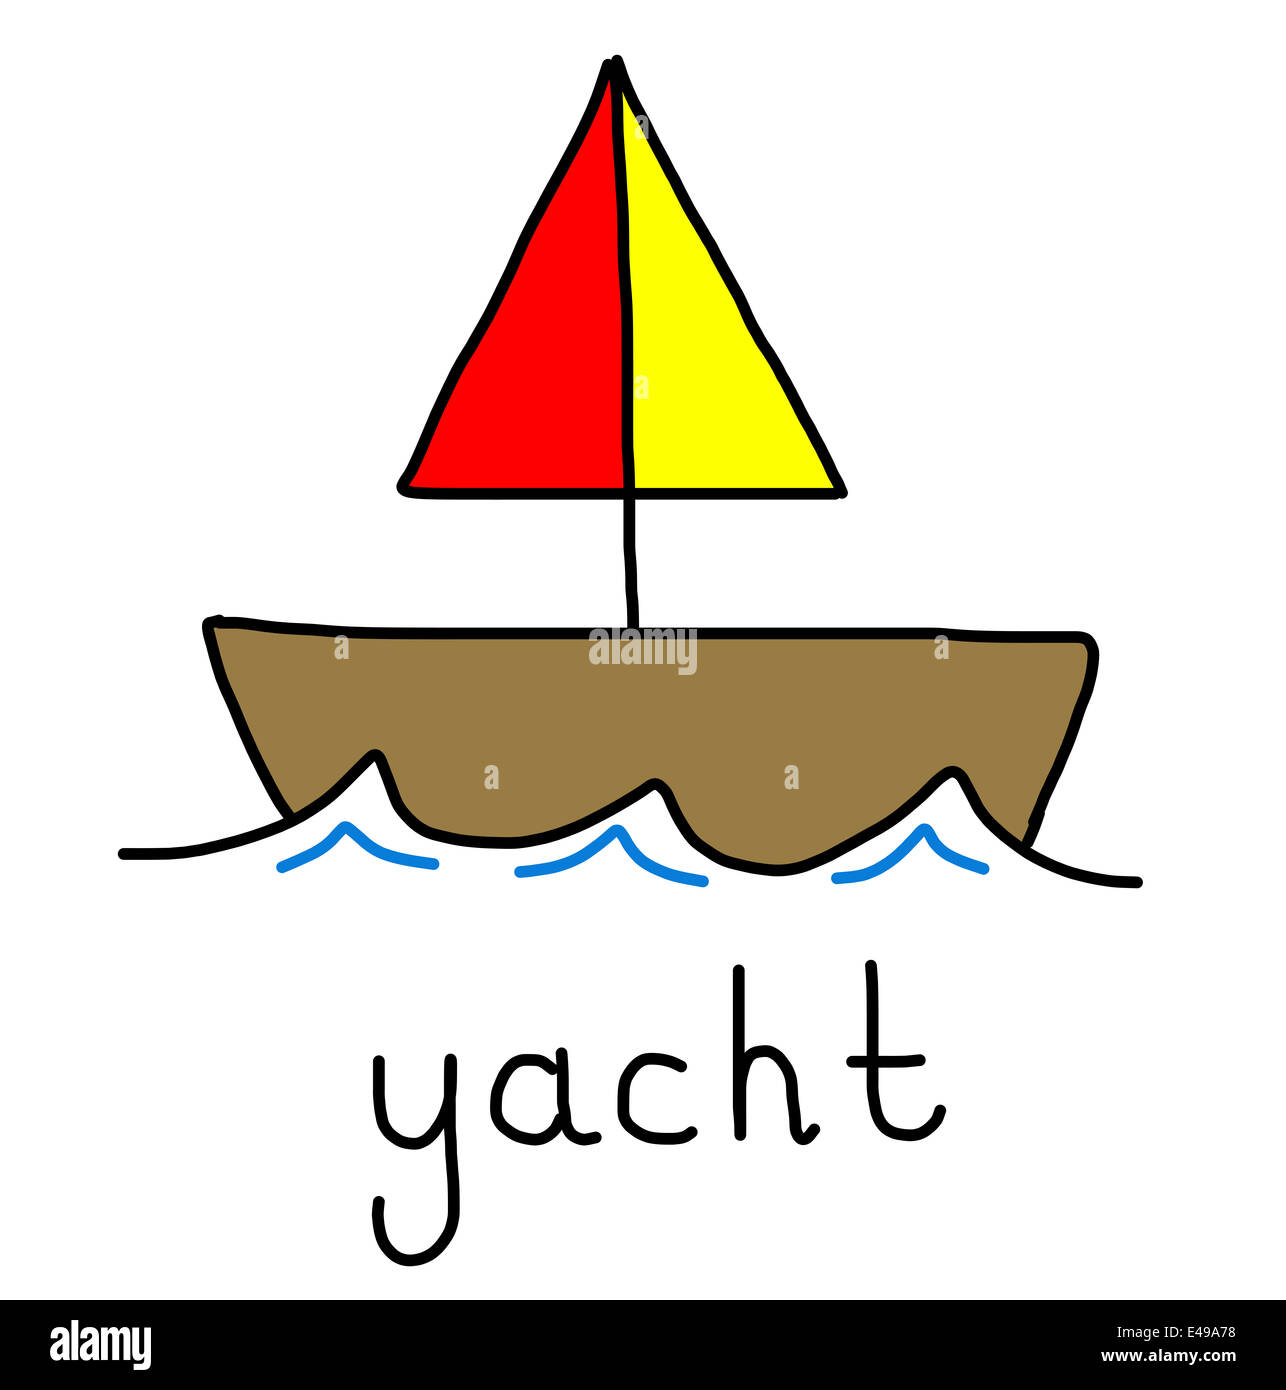 Illustrazione di alfabeto parole - yacht Foto Stock